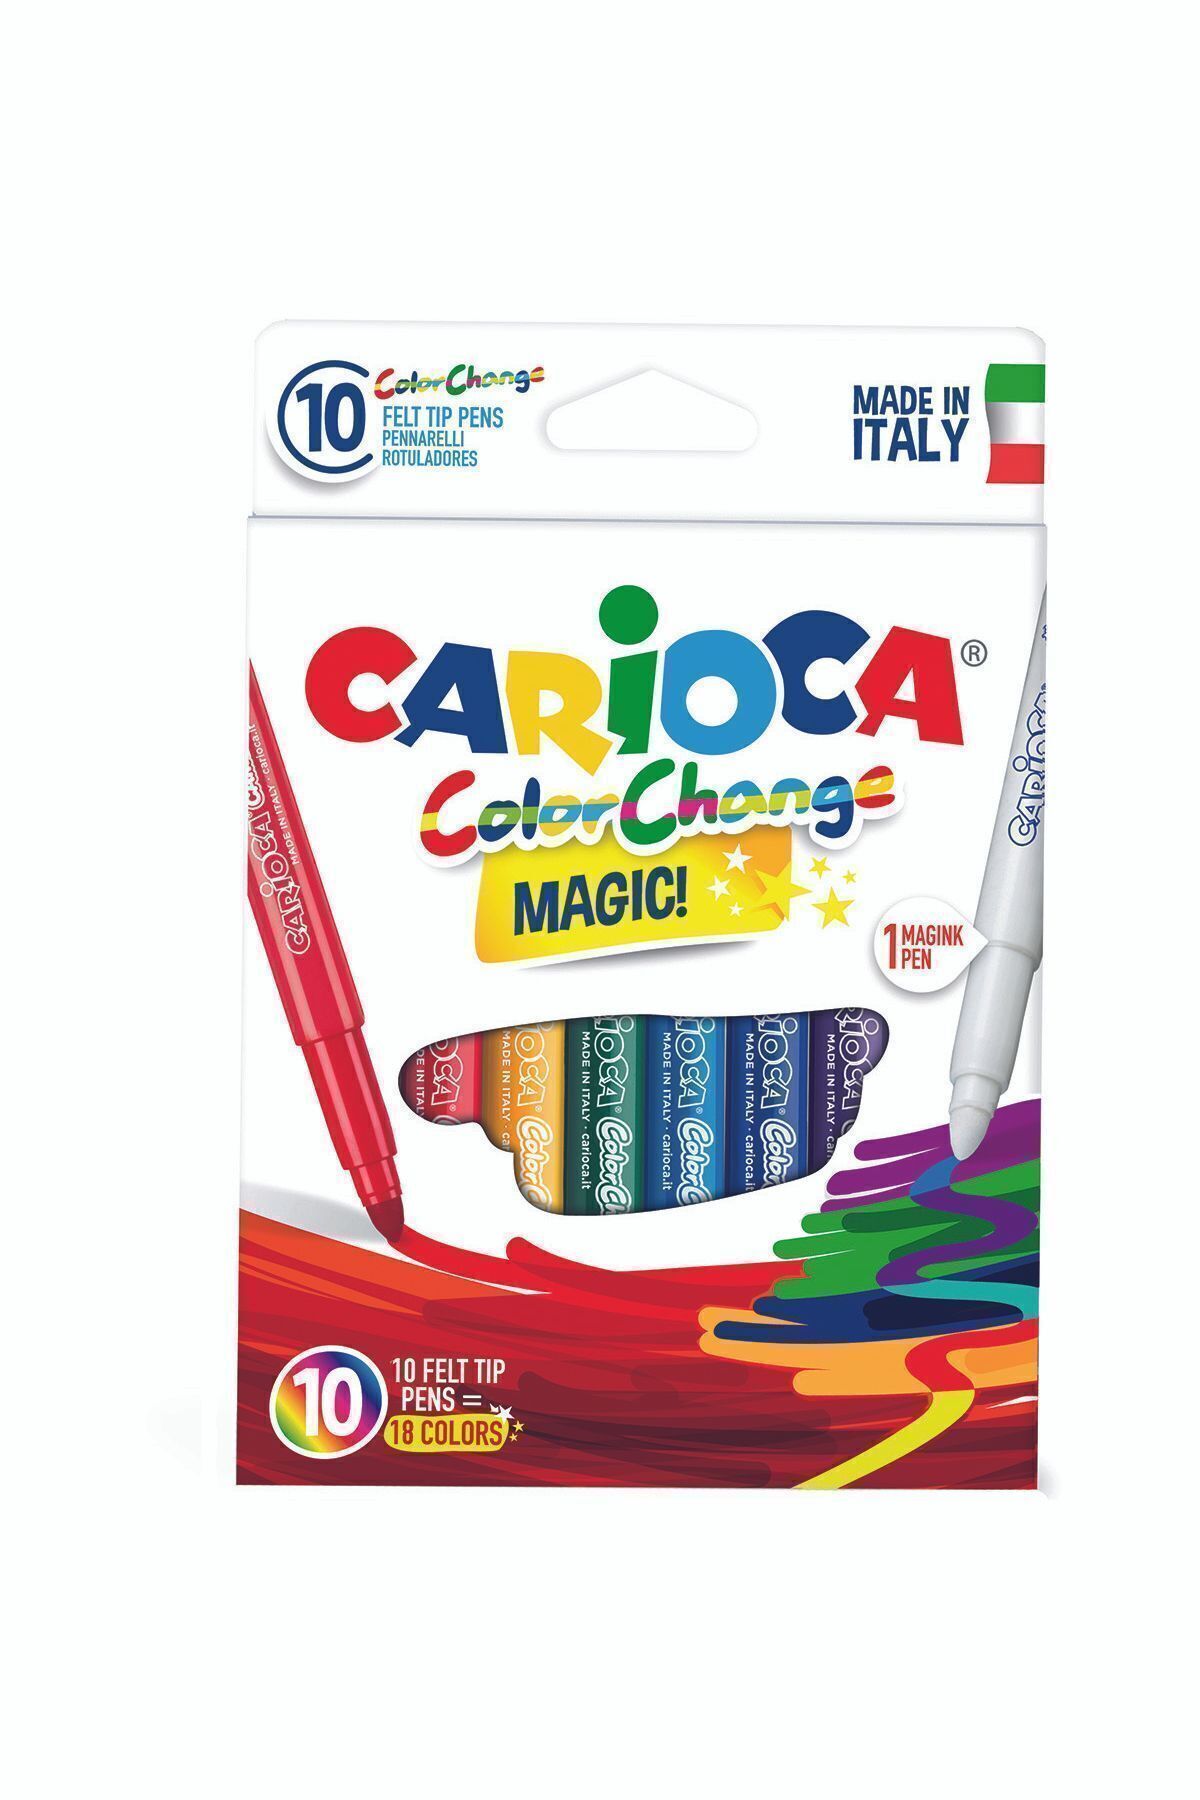 Carioca Renk Değiştiren Sihirli Keçeli Kalemler (9 RENK 1 RENK DEĞİŞTİRİCİ BEYAZ KALEM)